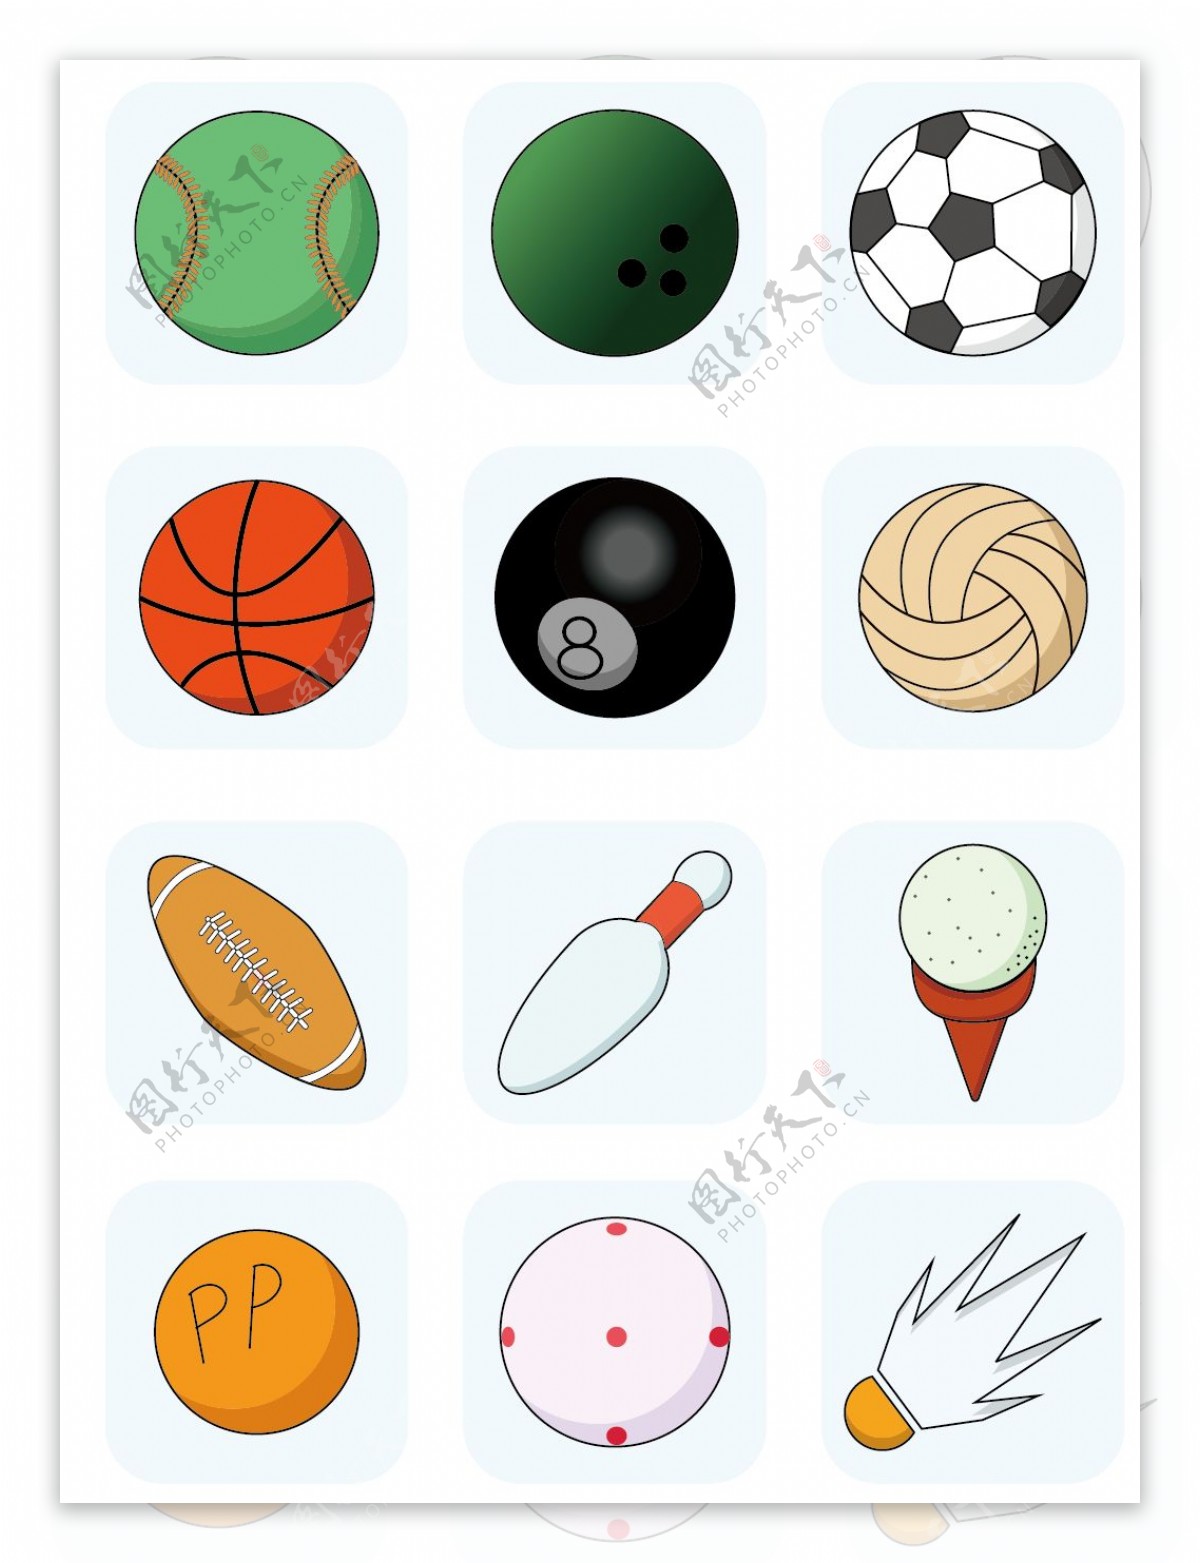 原创运动球类矢量icon可商用